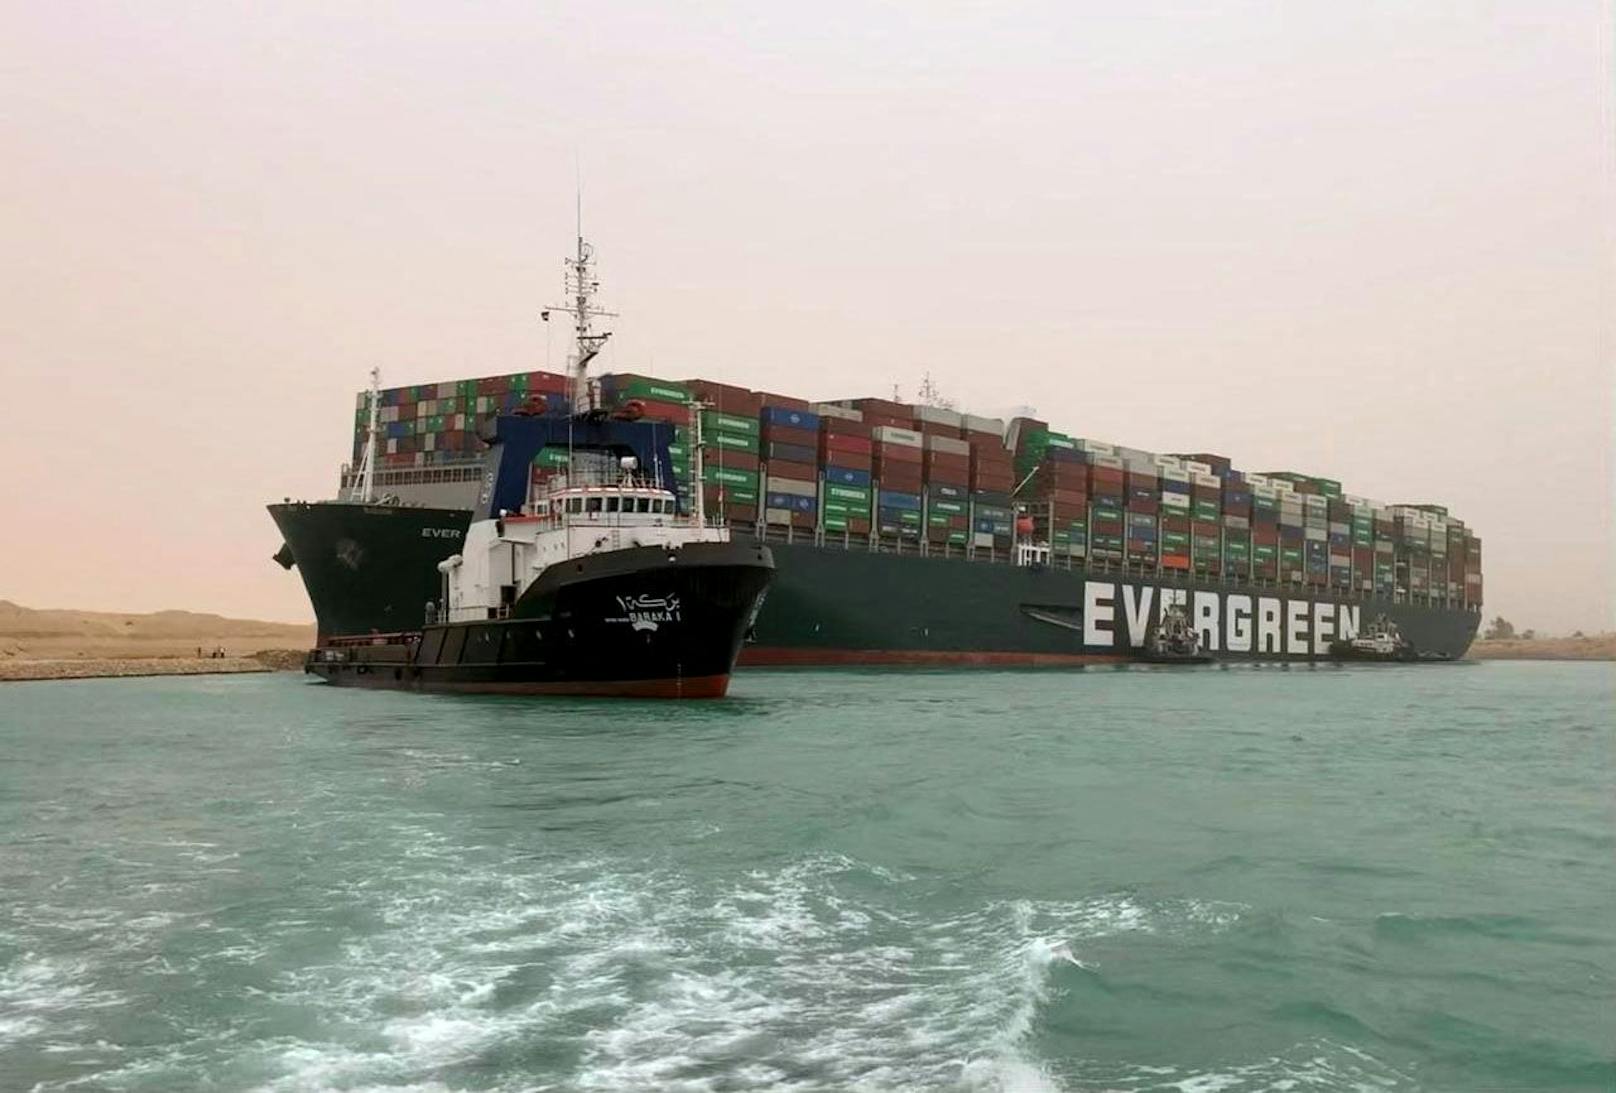 Die 400 Meter lange "MV Ever Given" blockiert aktuell den Suez-Kanal